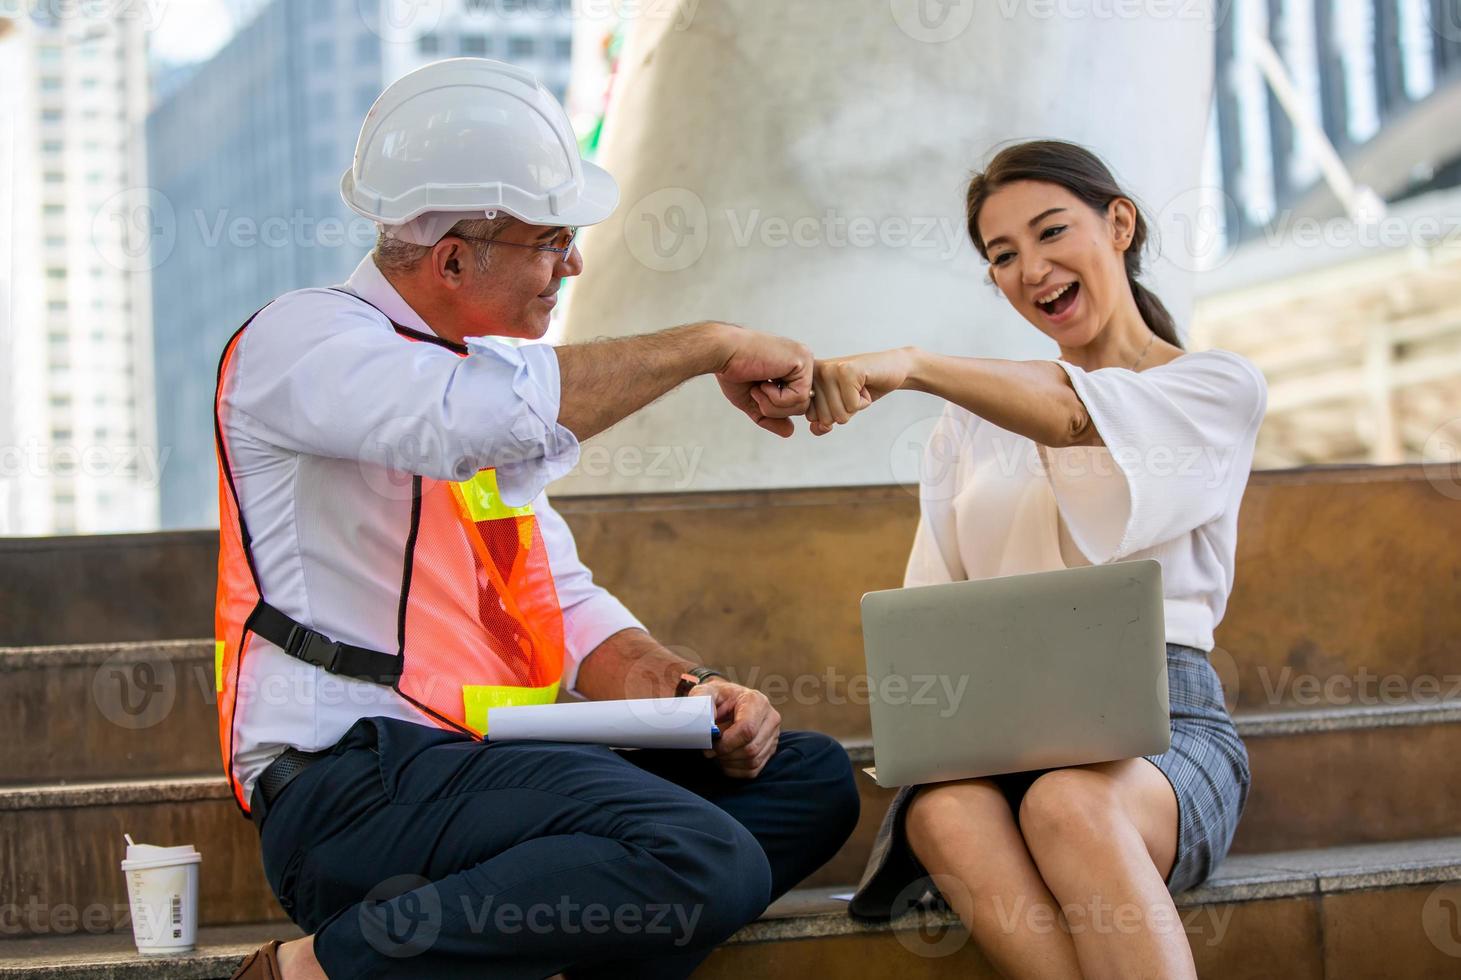 ingenjören och affärskvinnan kollar på urklipp på byggarbetsplatsen. begreppet teknik, byggande, stadsliv och framtid. foto